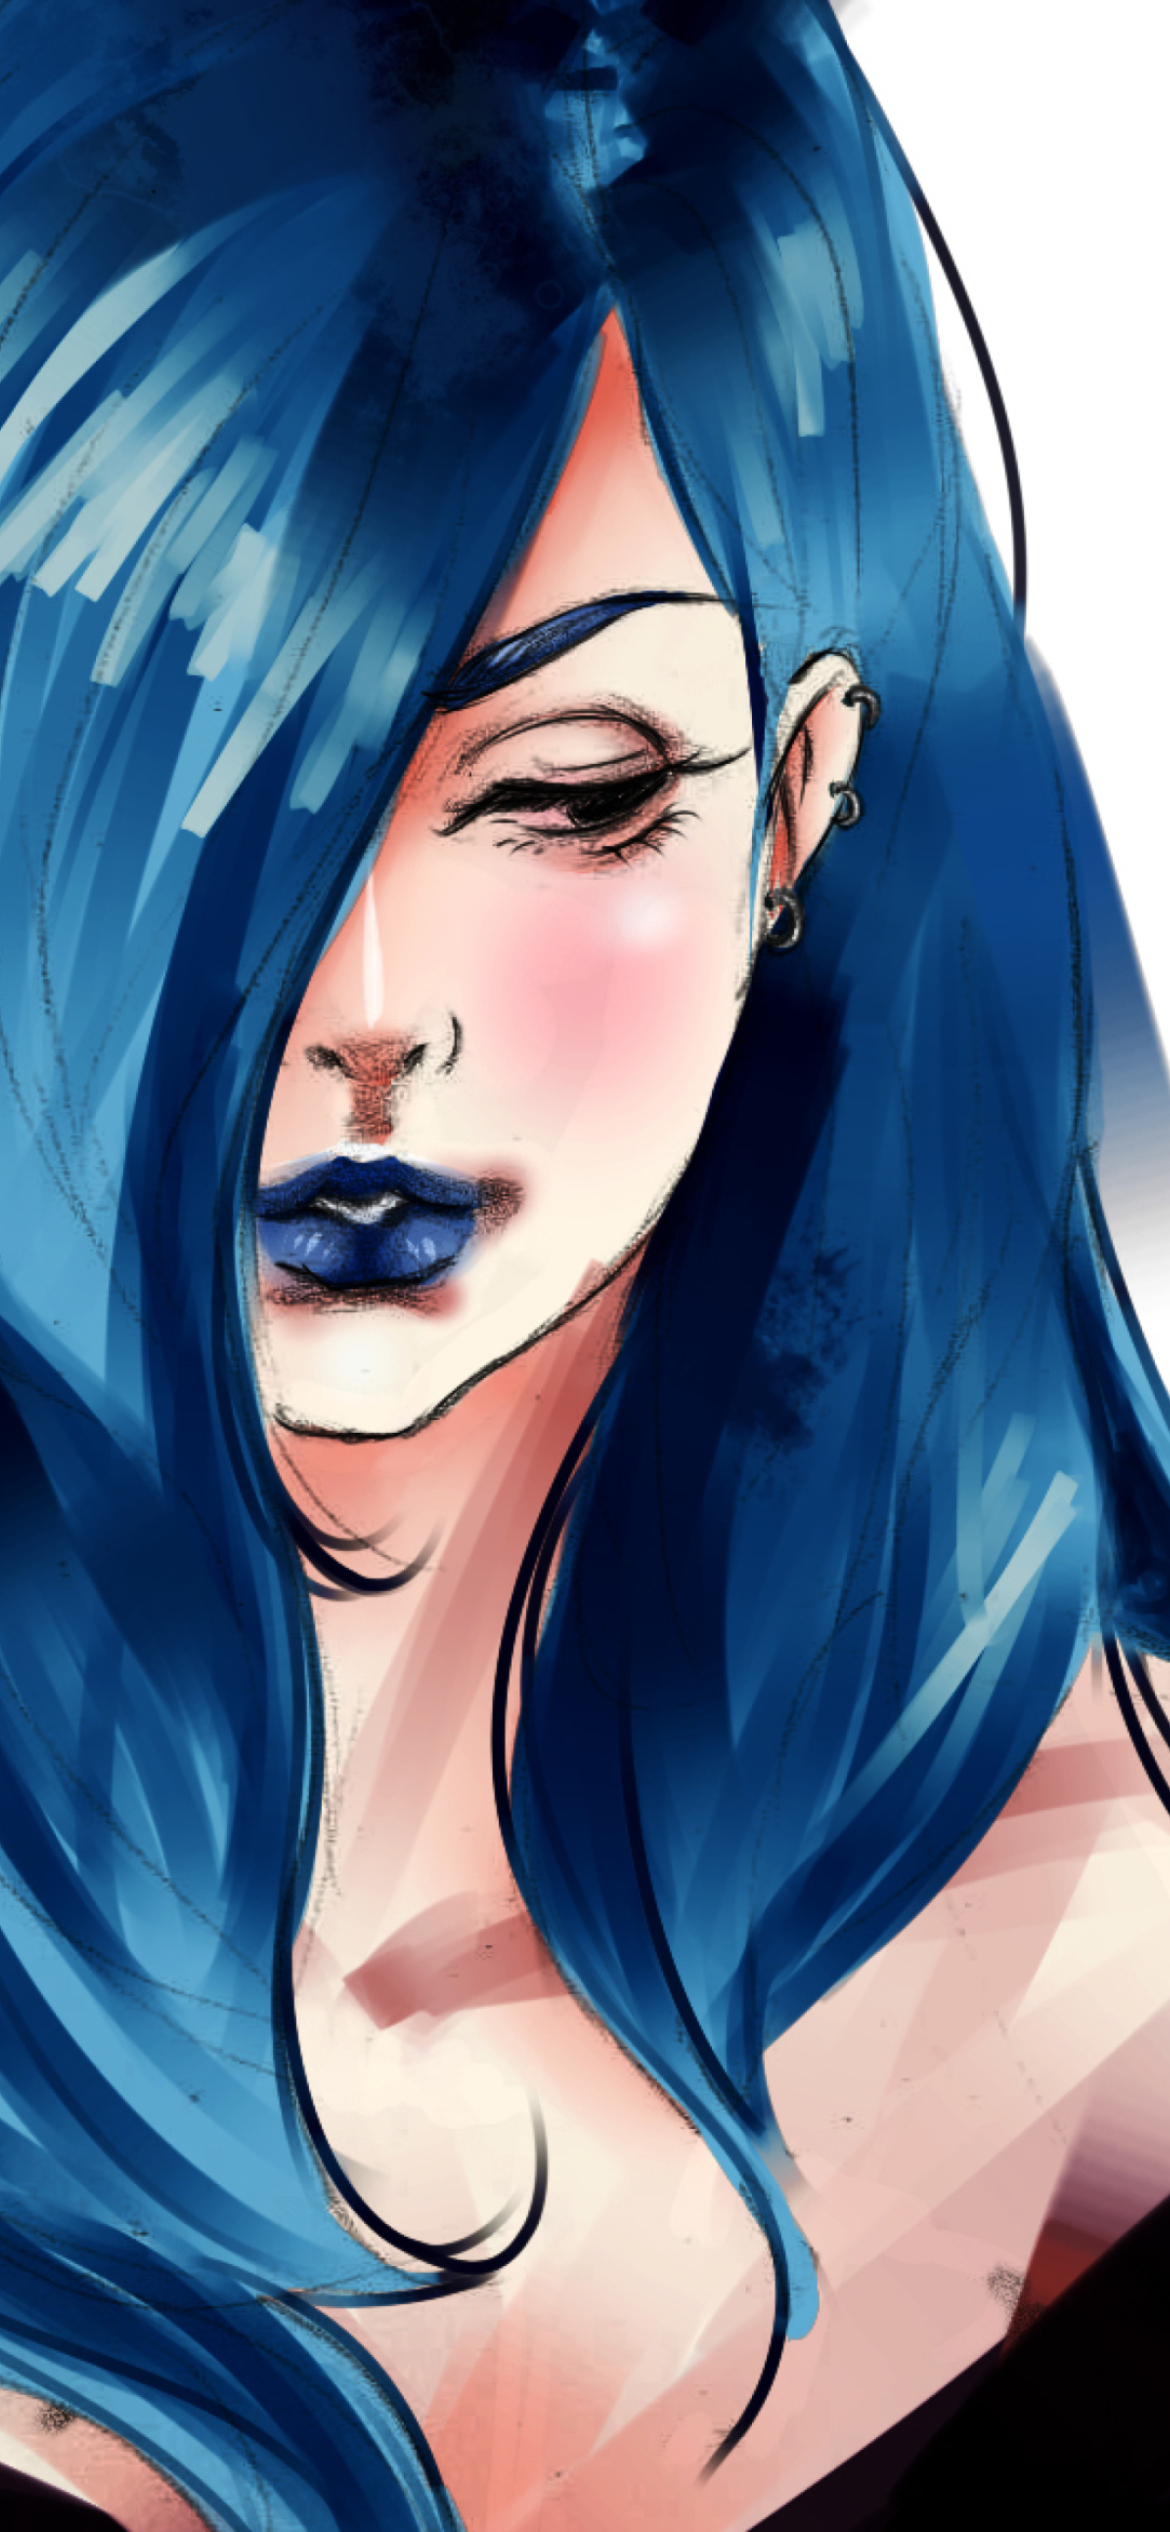 Обои Girl With Blue Hair Painting 1170x2532